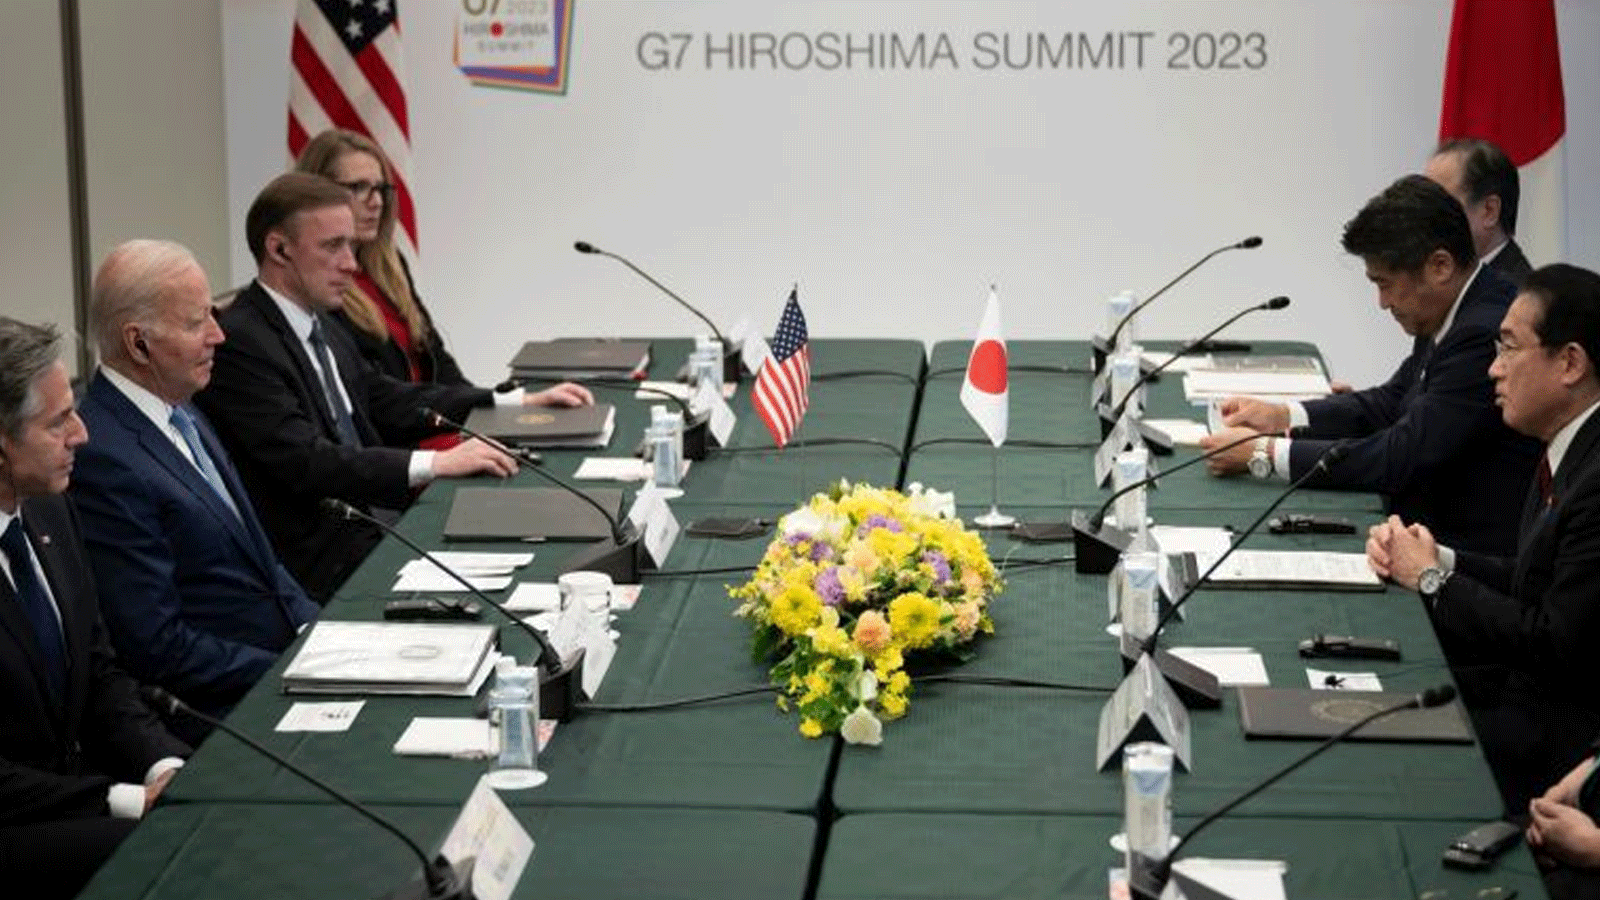 وزير الخارجية الأميركي أنتوني بلينكين (إلى اليسار) والرئيس الأميركي جو بايدن (الثاني إلى اليسار) ومستشار الأمن القومي جيك سوليفان (الثالث إلى اليسار) وآخرون يستمعون إلى رئيس الوزراء الياباني فوميو كيشيدا (إلى اليمين) خلال اجتماع ثنائي في هيروشيما في 18 أيار\ مايو 2023، قبيل قمة قادة مجموعة السبع